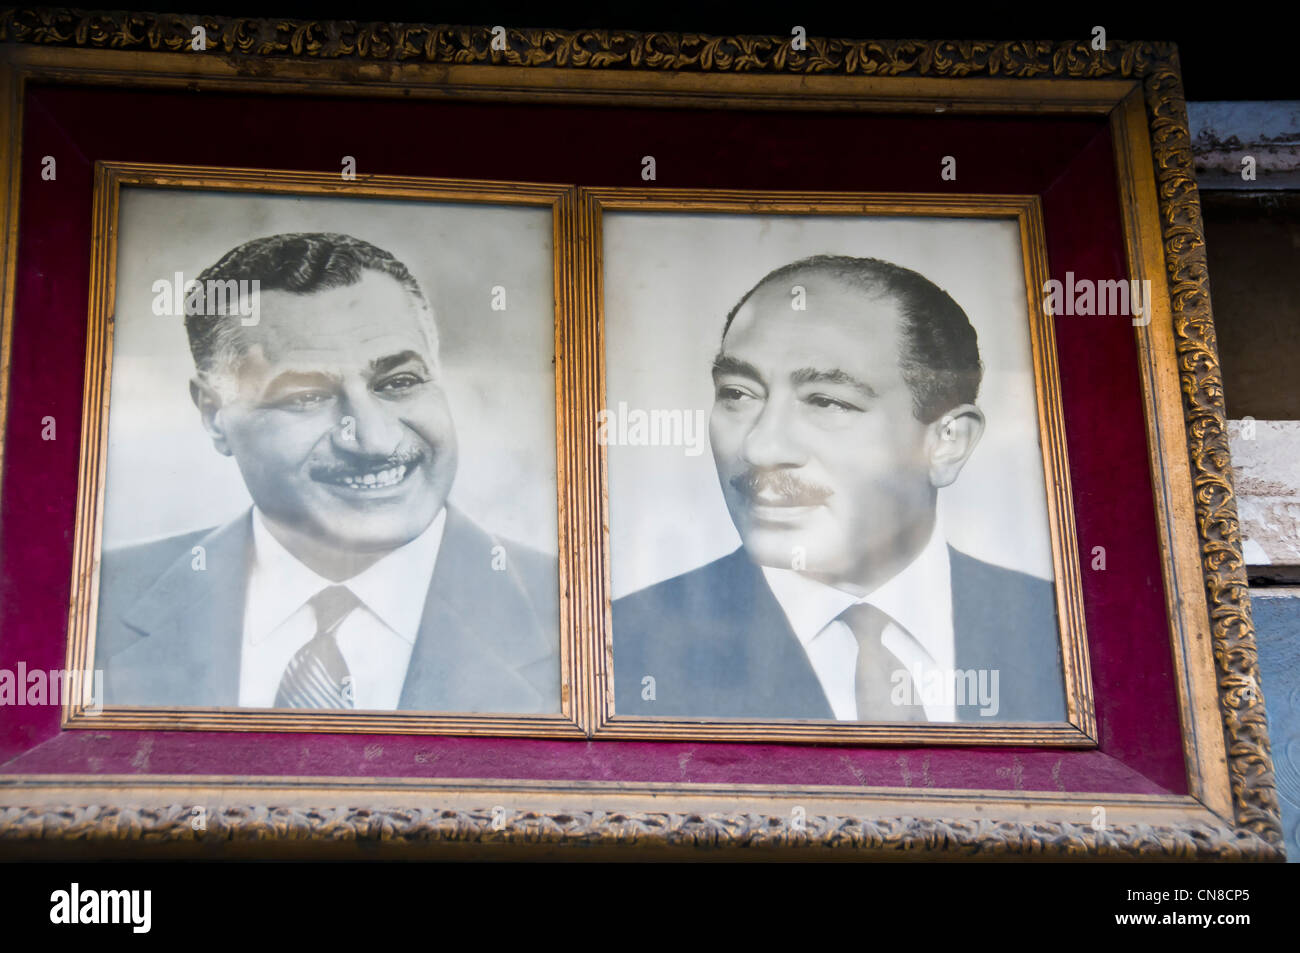 Zwei Ex-Präsidenten von Ägypten: Gamal Abdel Nasser & Anwar Sadate in einem Rahmen vor Geschäft Heliopolis-Kairo-Ägypten Stockfoto